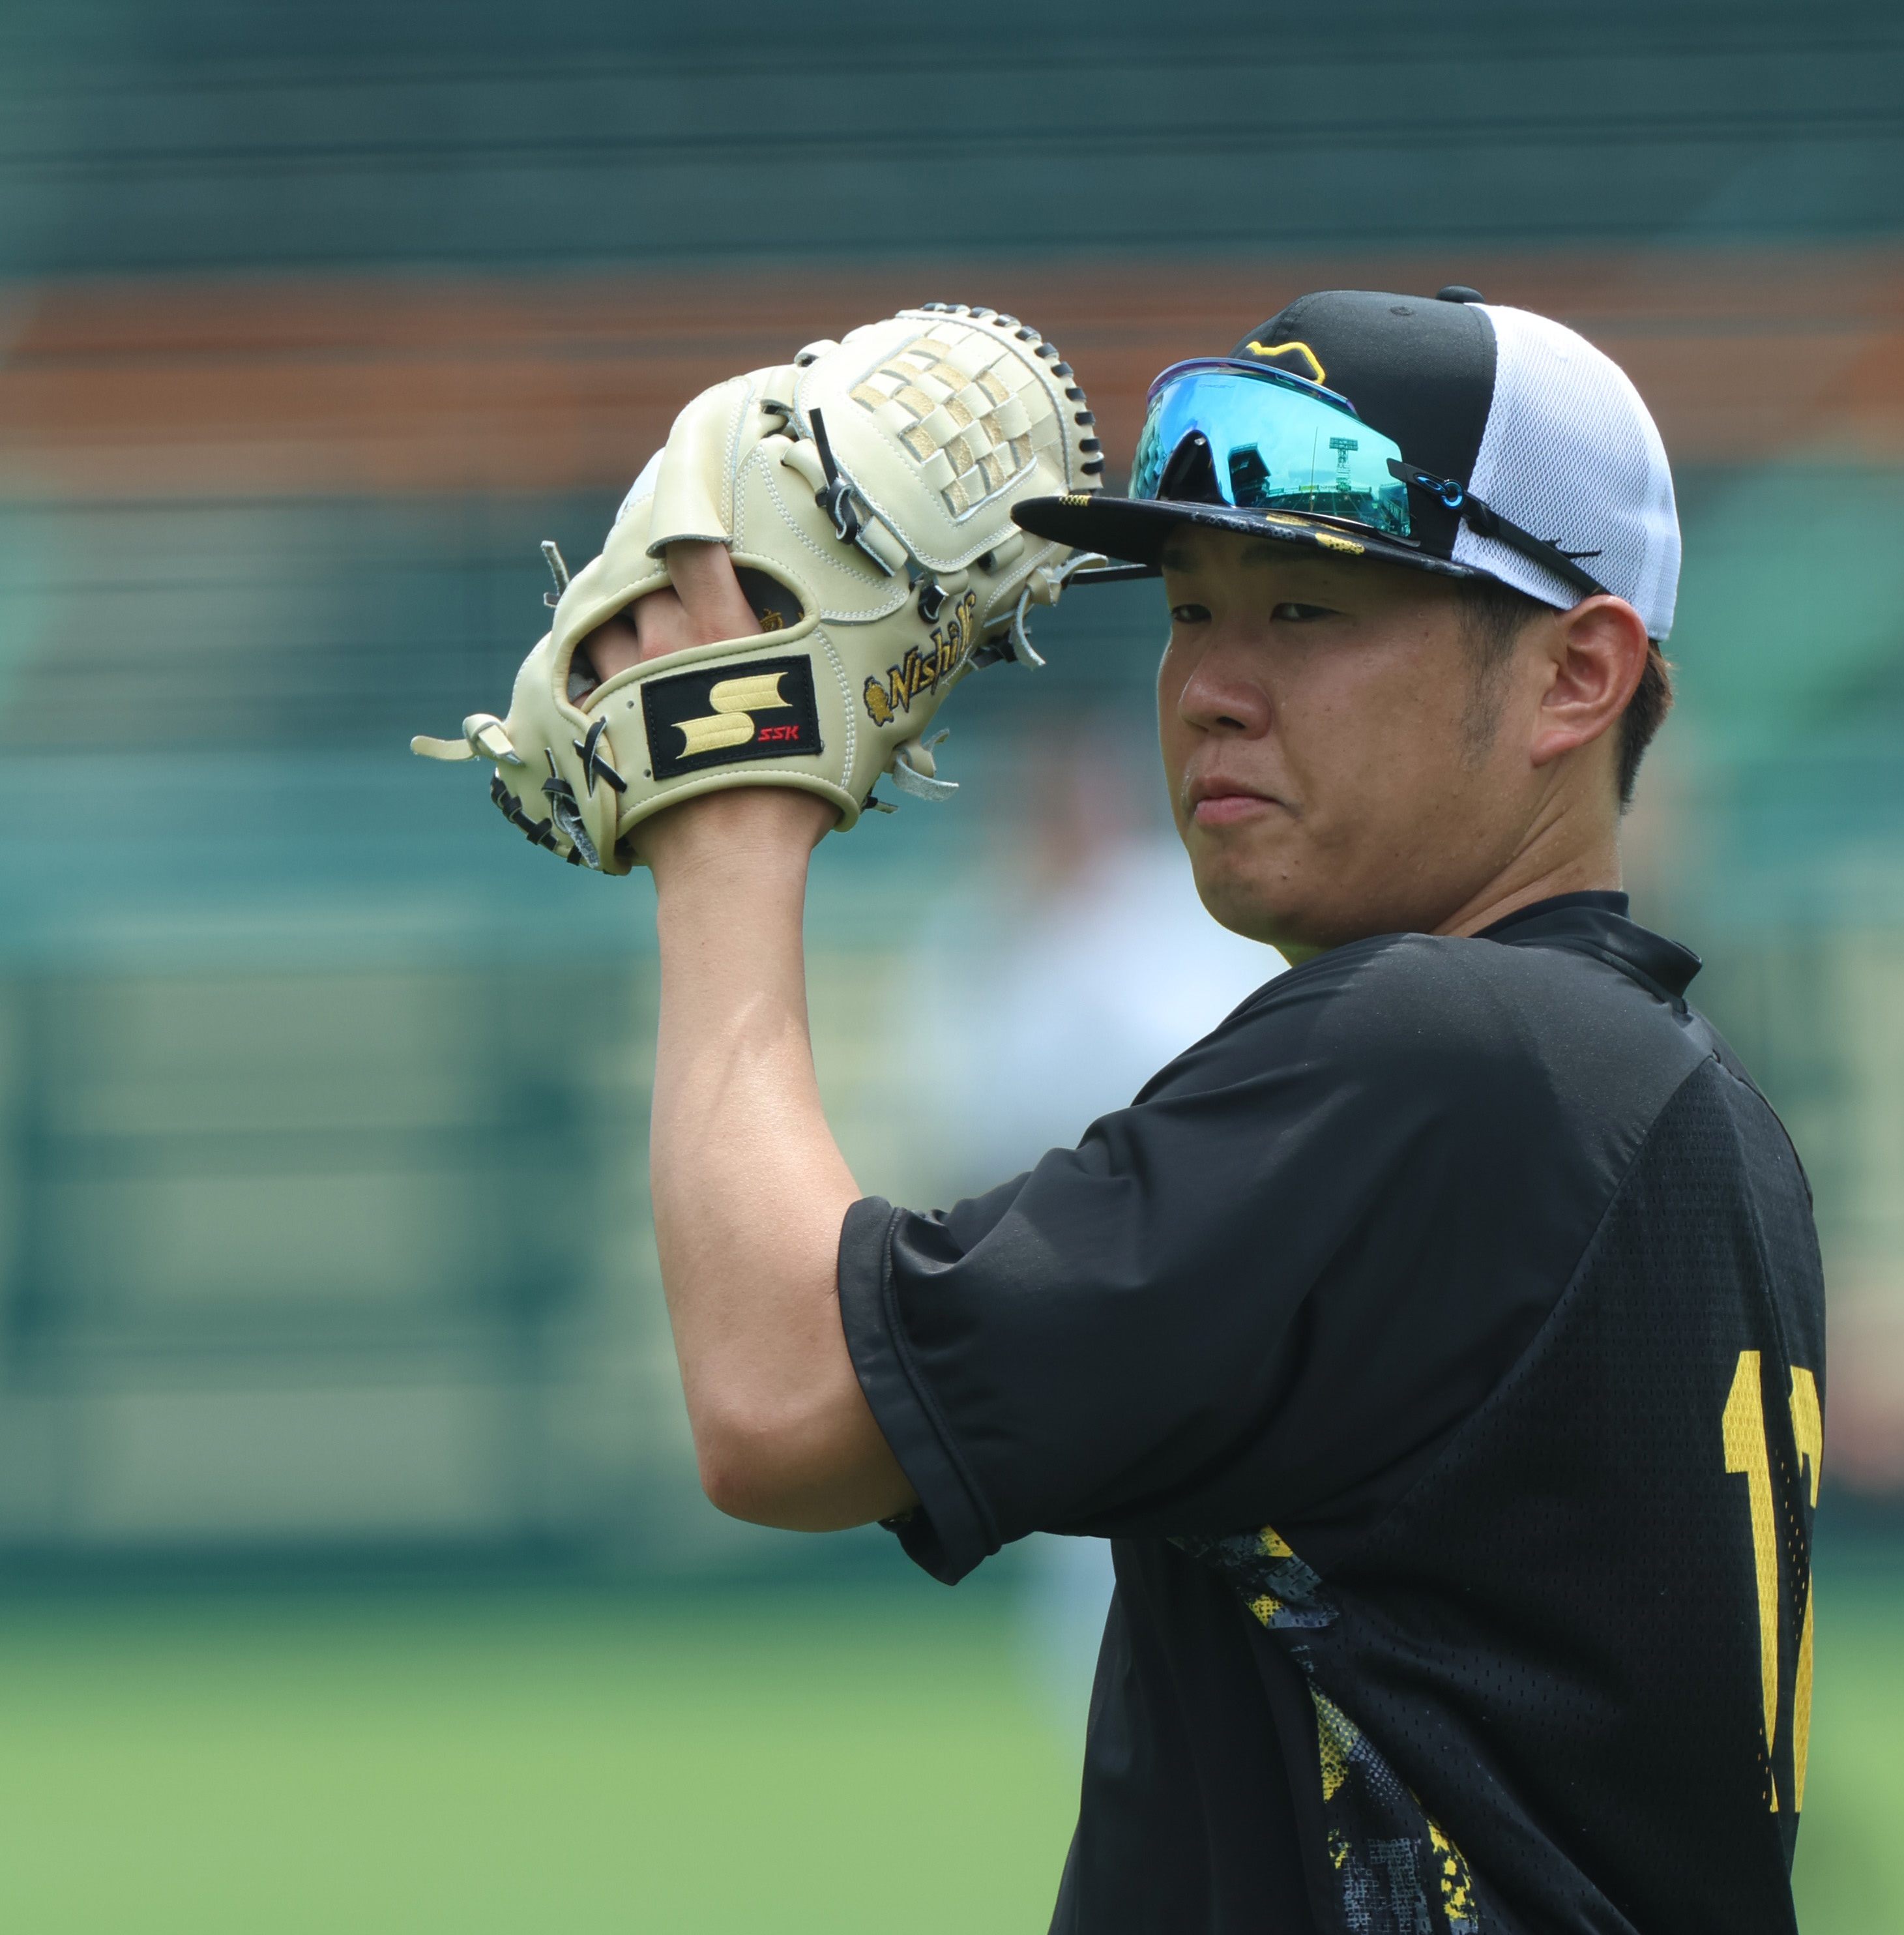 SSK 西勇輝選手のグローブ - 野球